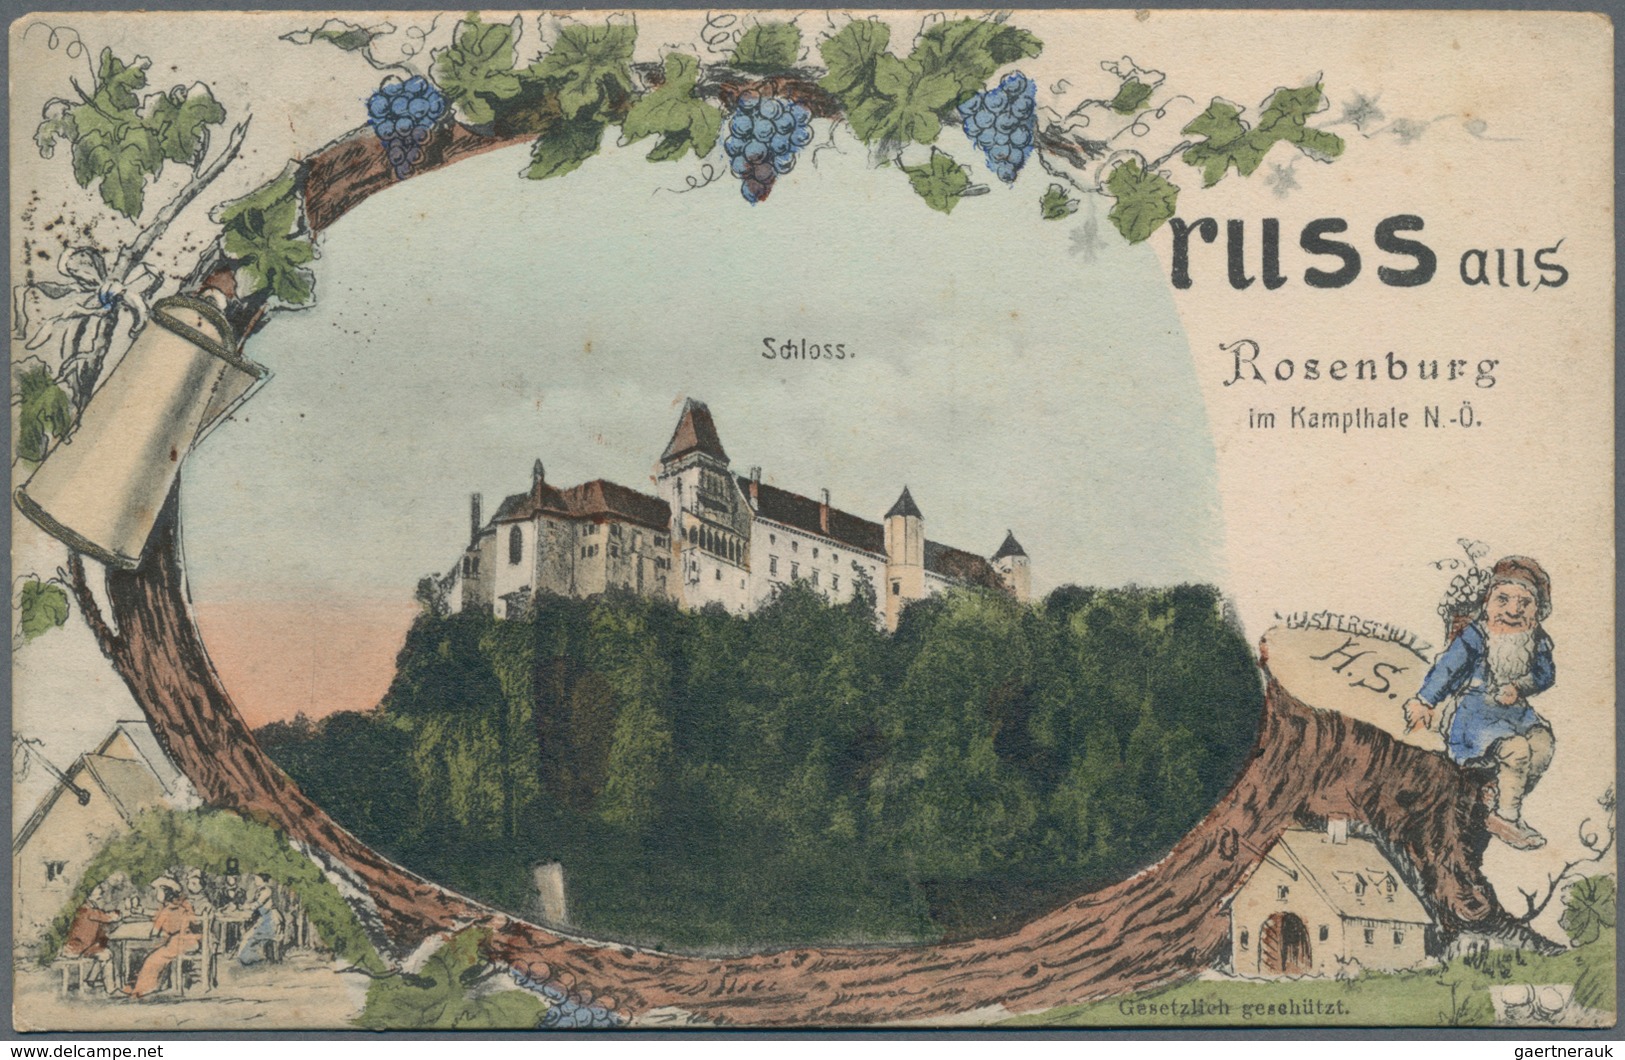 Ansichtskarten: Österreich: NIEDERÖSTERREICH, umfangreiche Sammlung mit über 1500 historischen Ansic